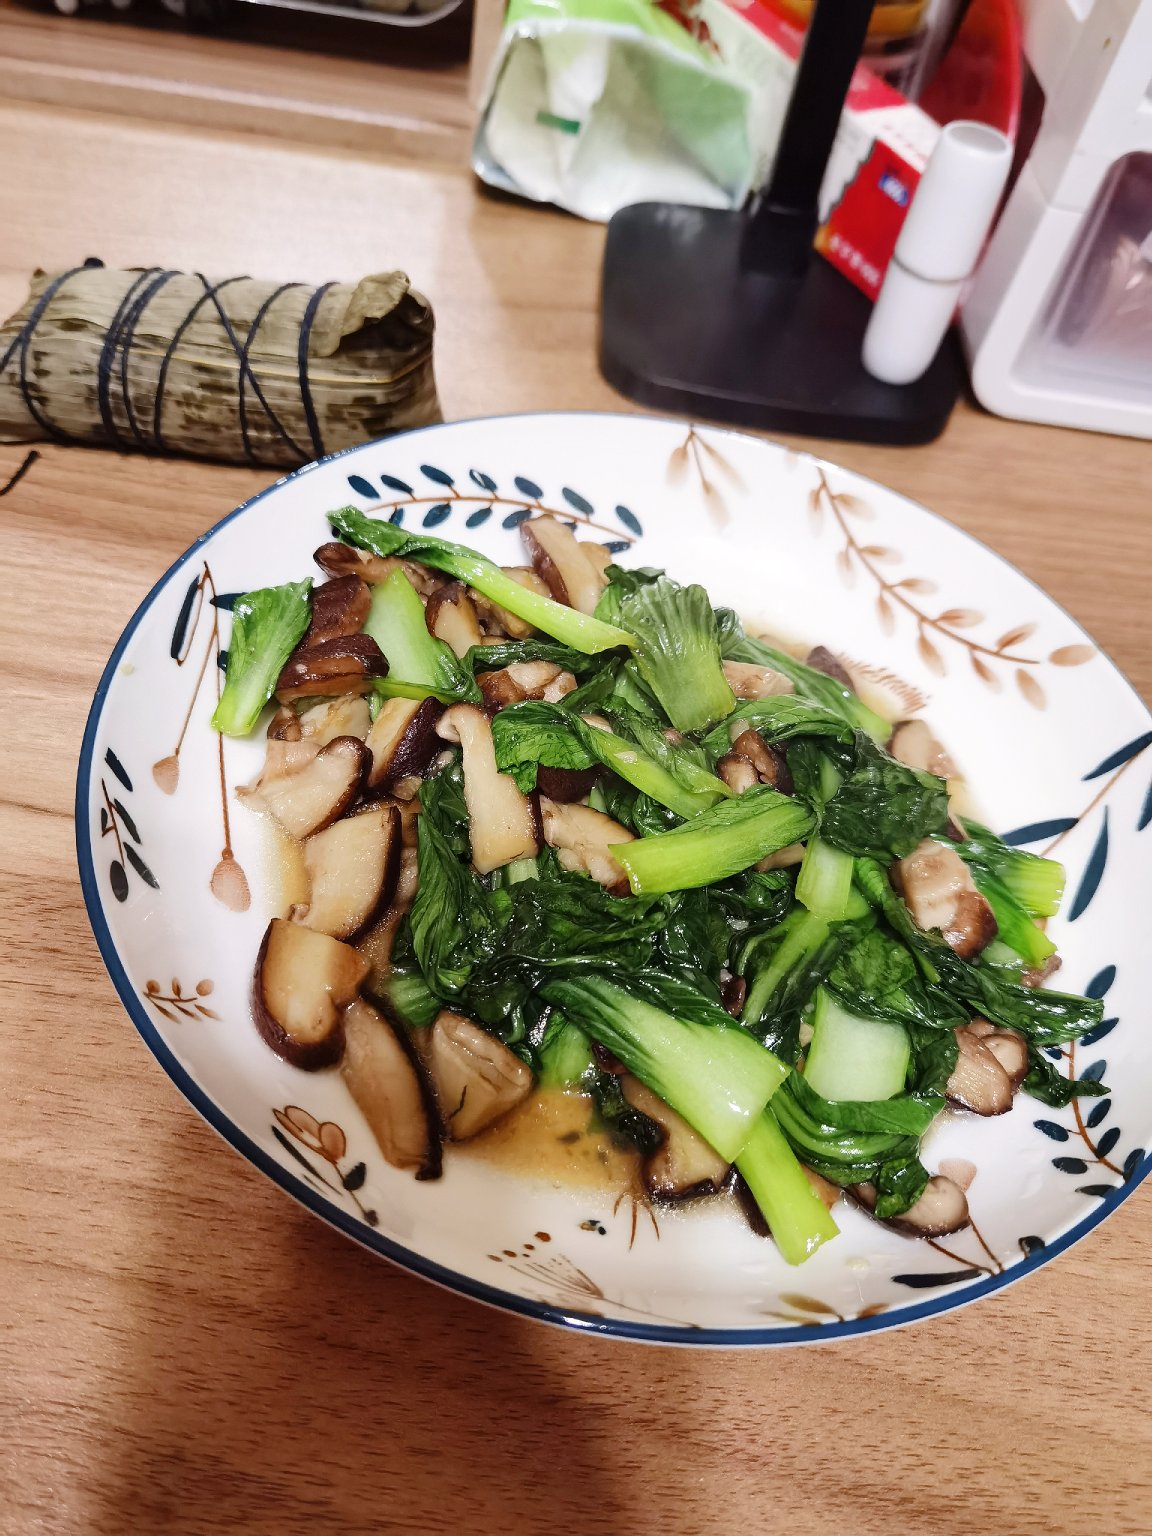 清炒香菇青菜